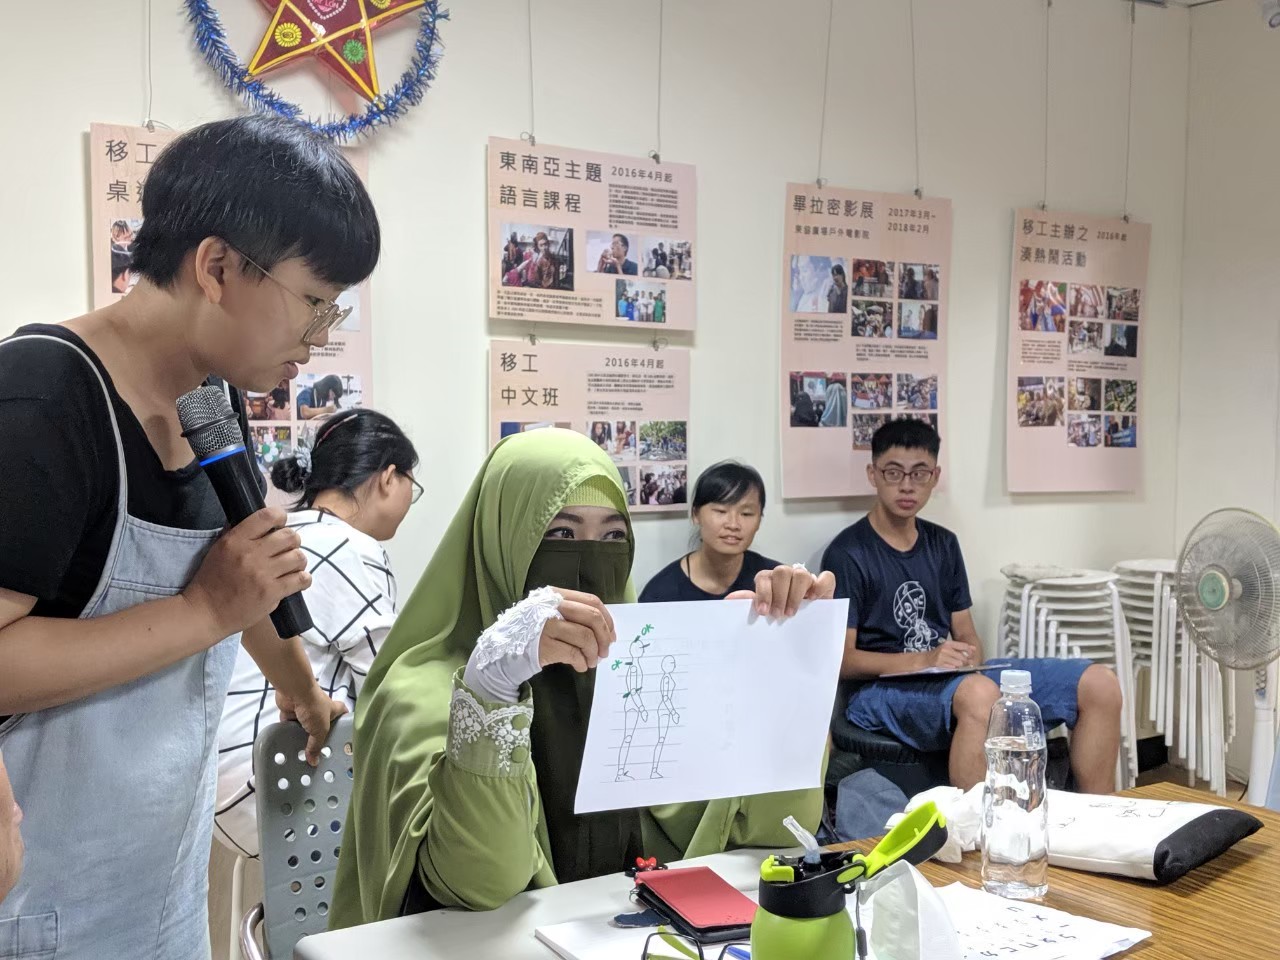 ไข่ตี้ (นามแฝง) ผู้อนุบาลข้ามชาติชาวอินโดนิเซียกำลังเรียนภาษาจีน